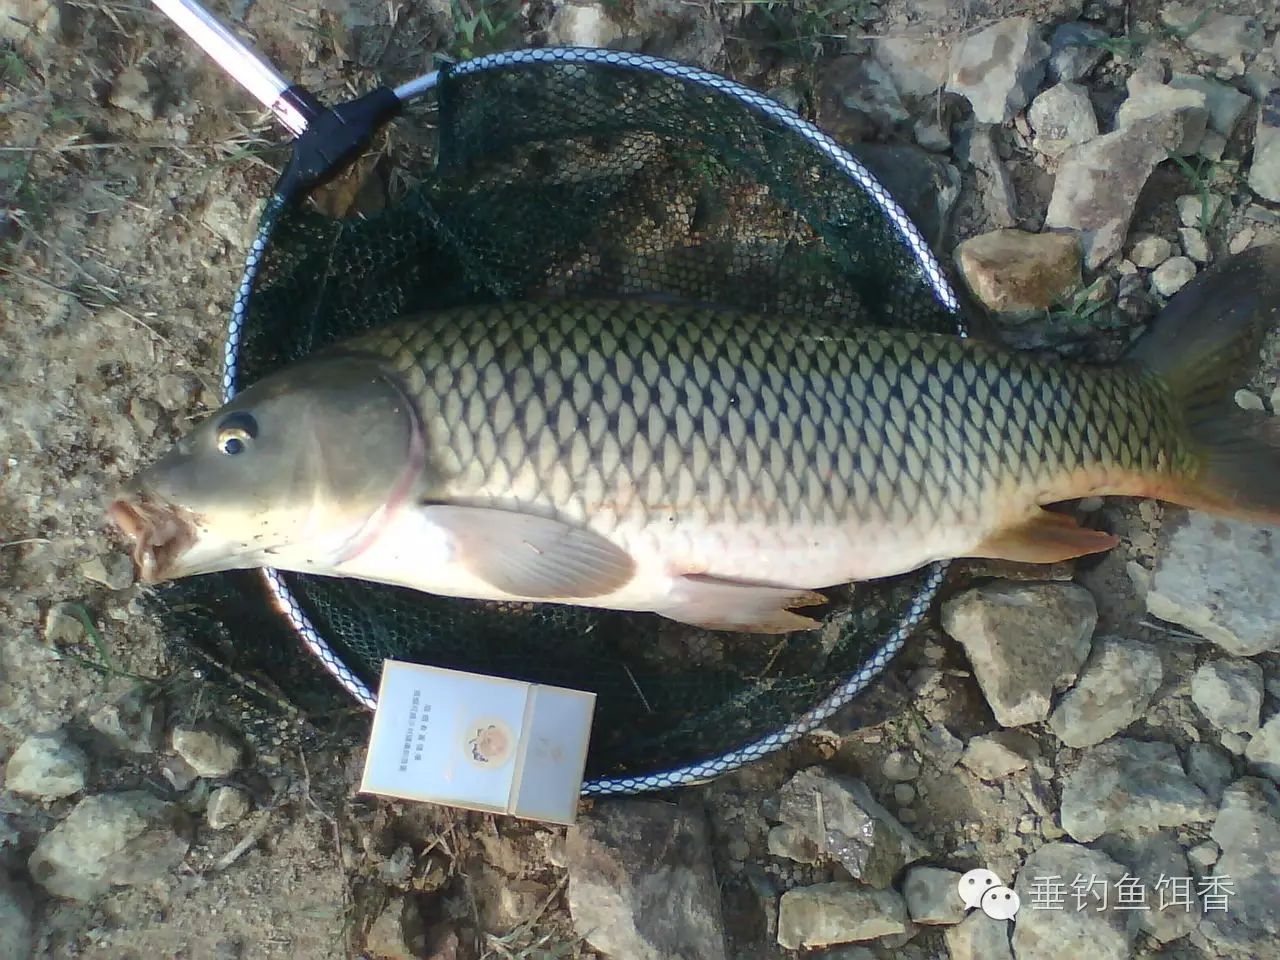 【鱼饵制备】钓鲤鱼提高诱鱼效果和中鱼率的饵料配置方法